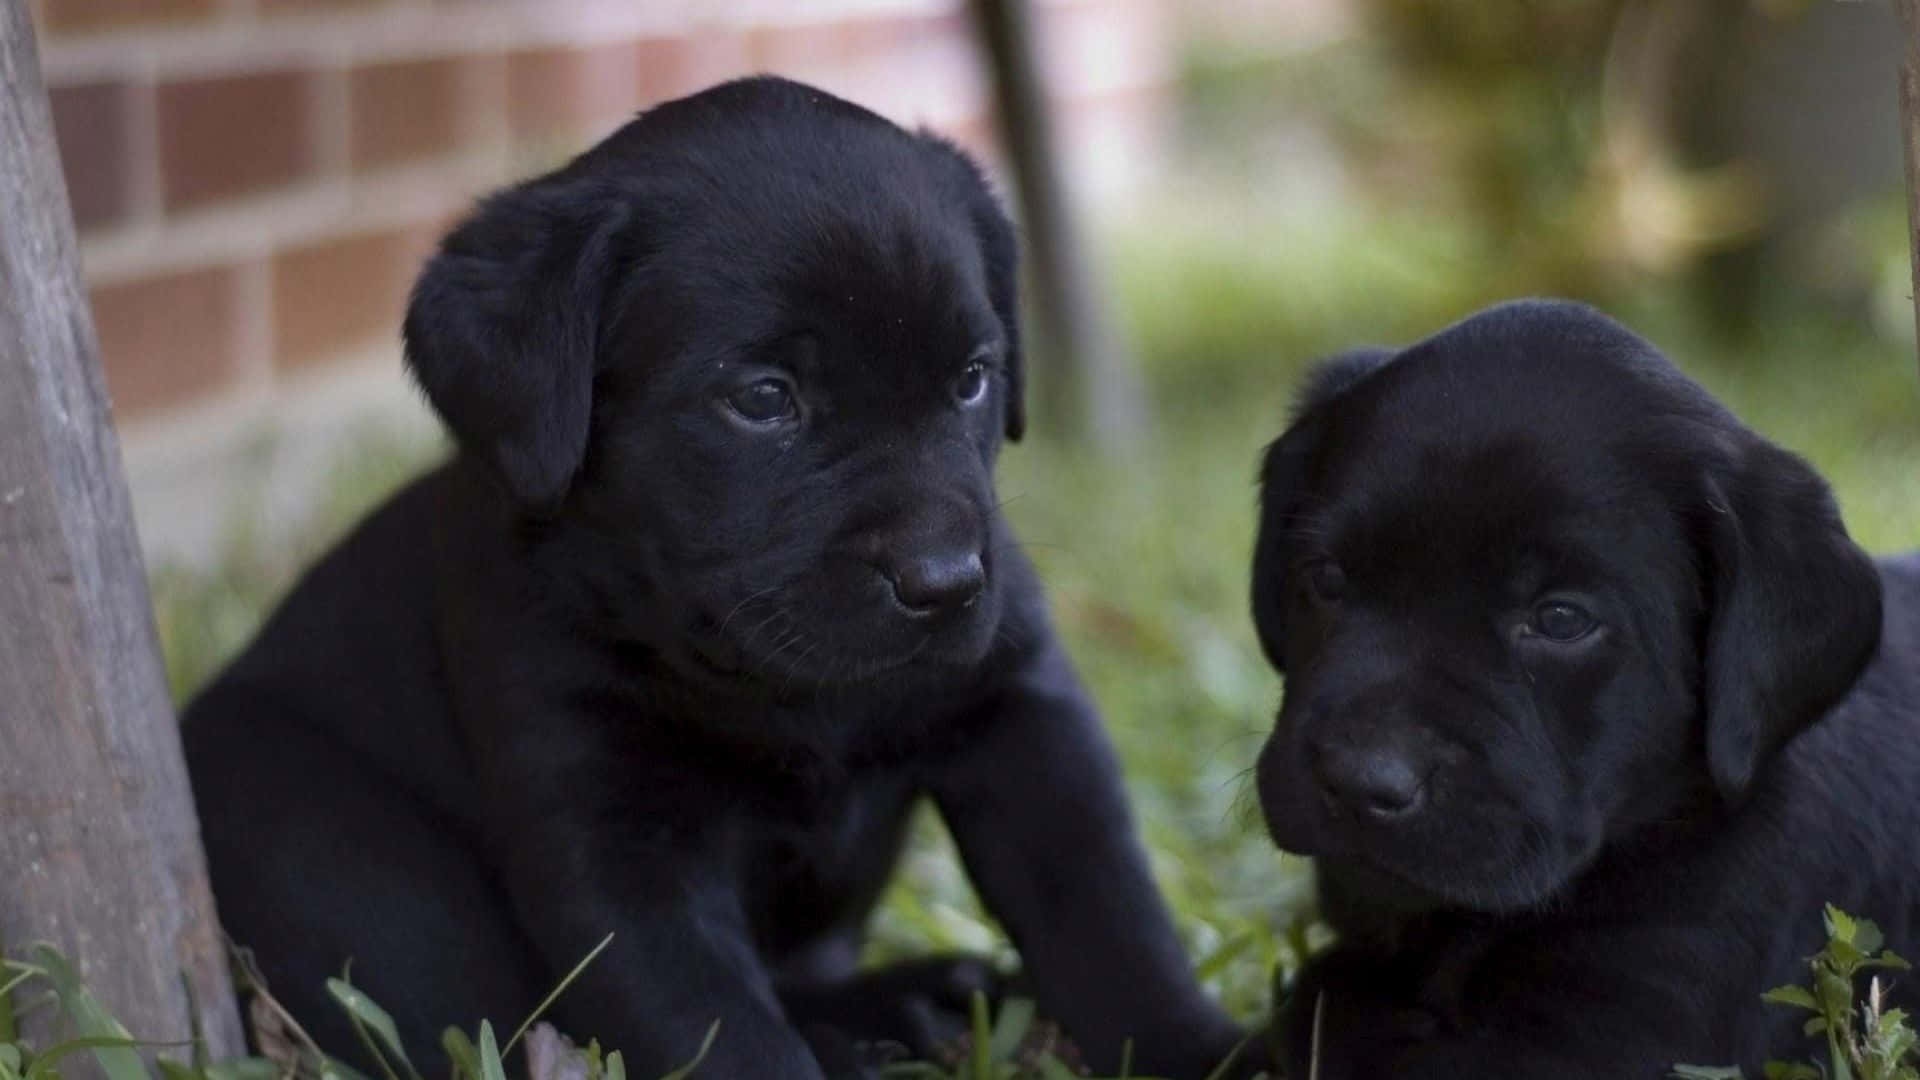 Imagende Cachorros De Labrador Negro En Exteriores